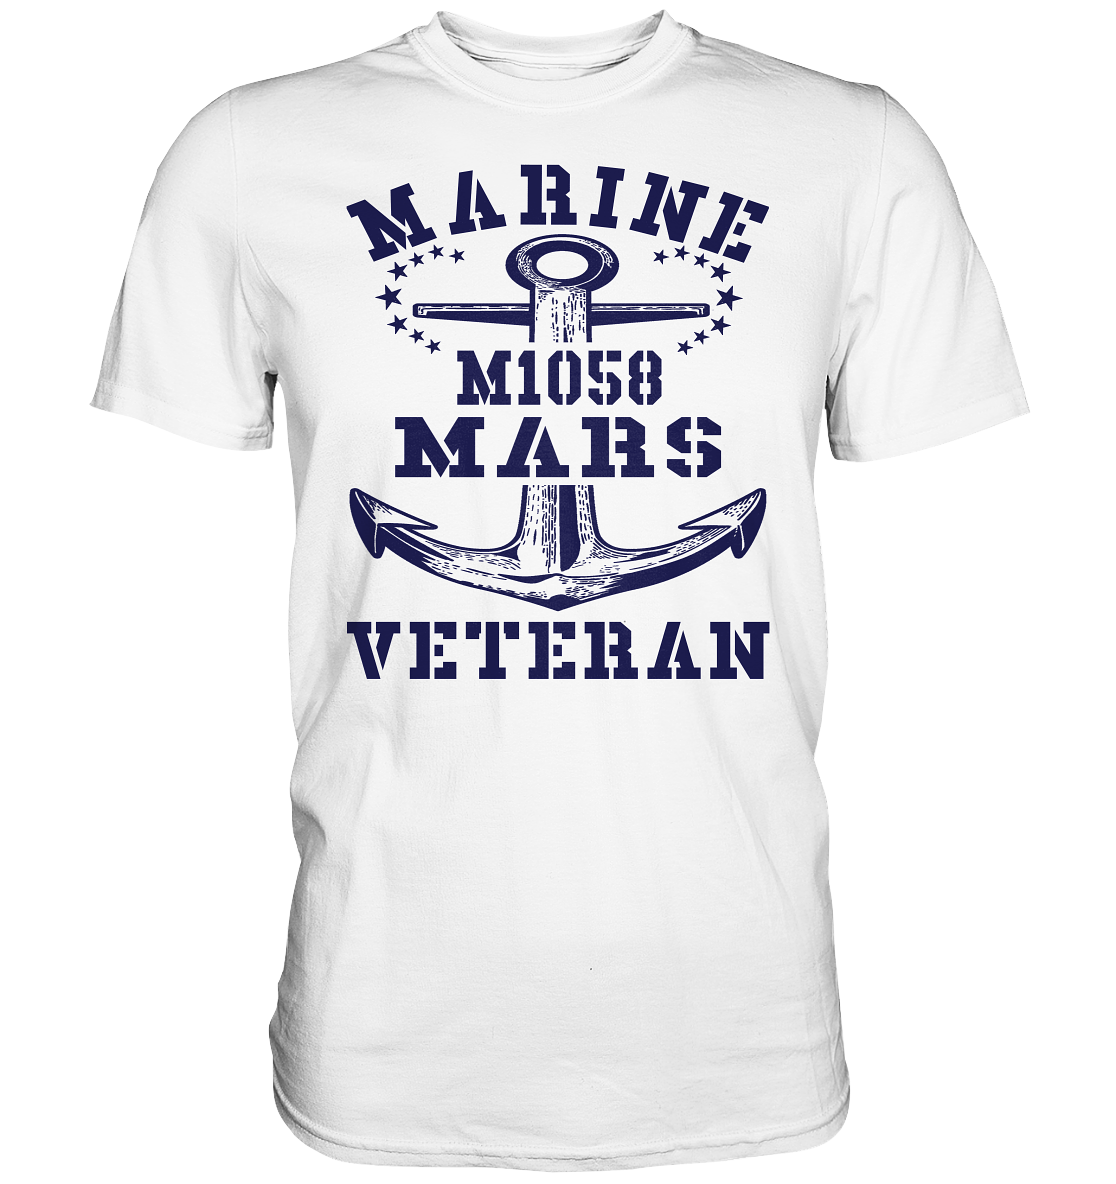 SM-Boot M1058 MARS Marine Veteran - Premium Shirt